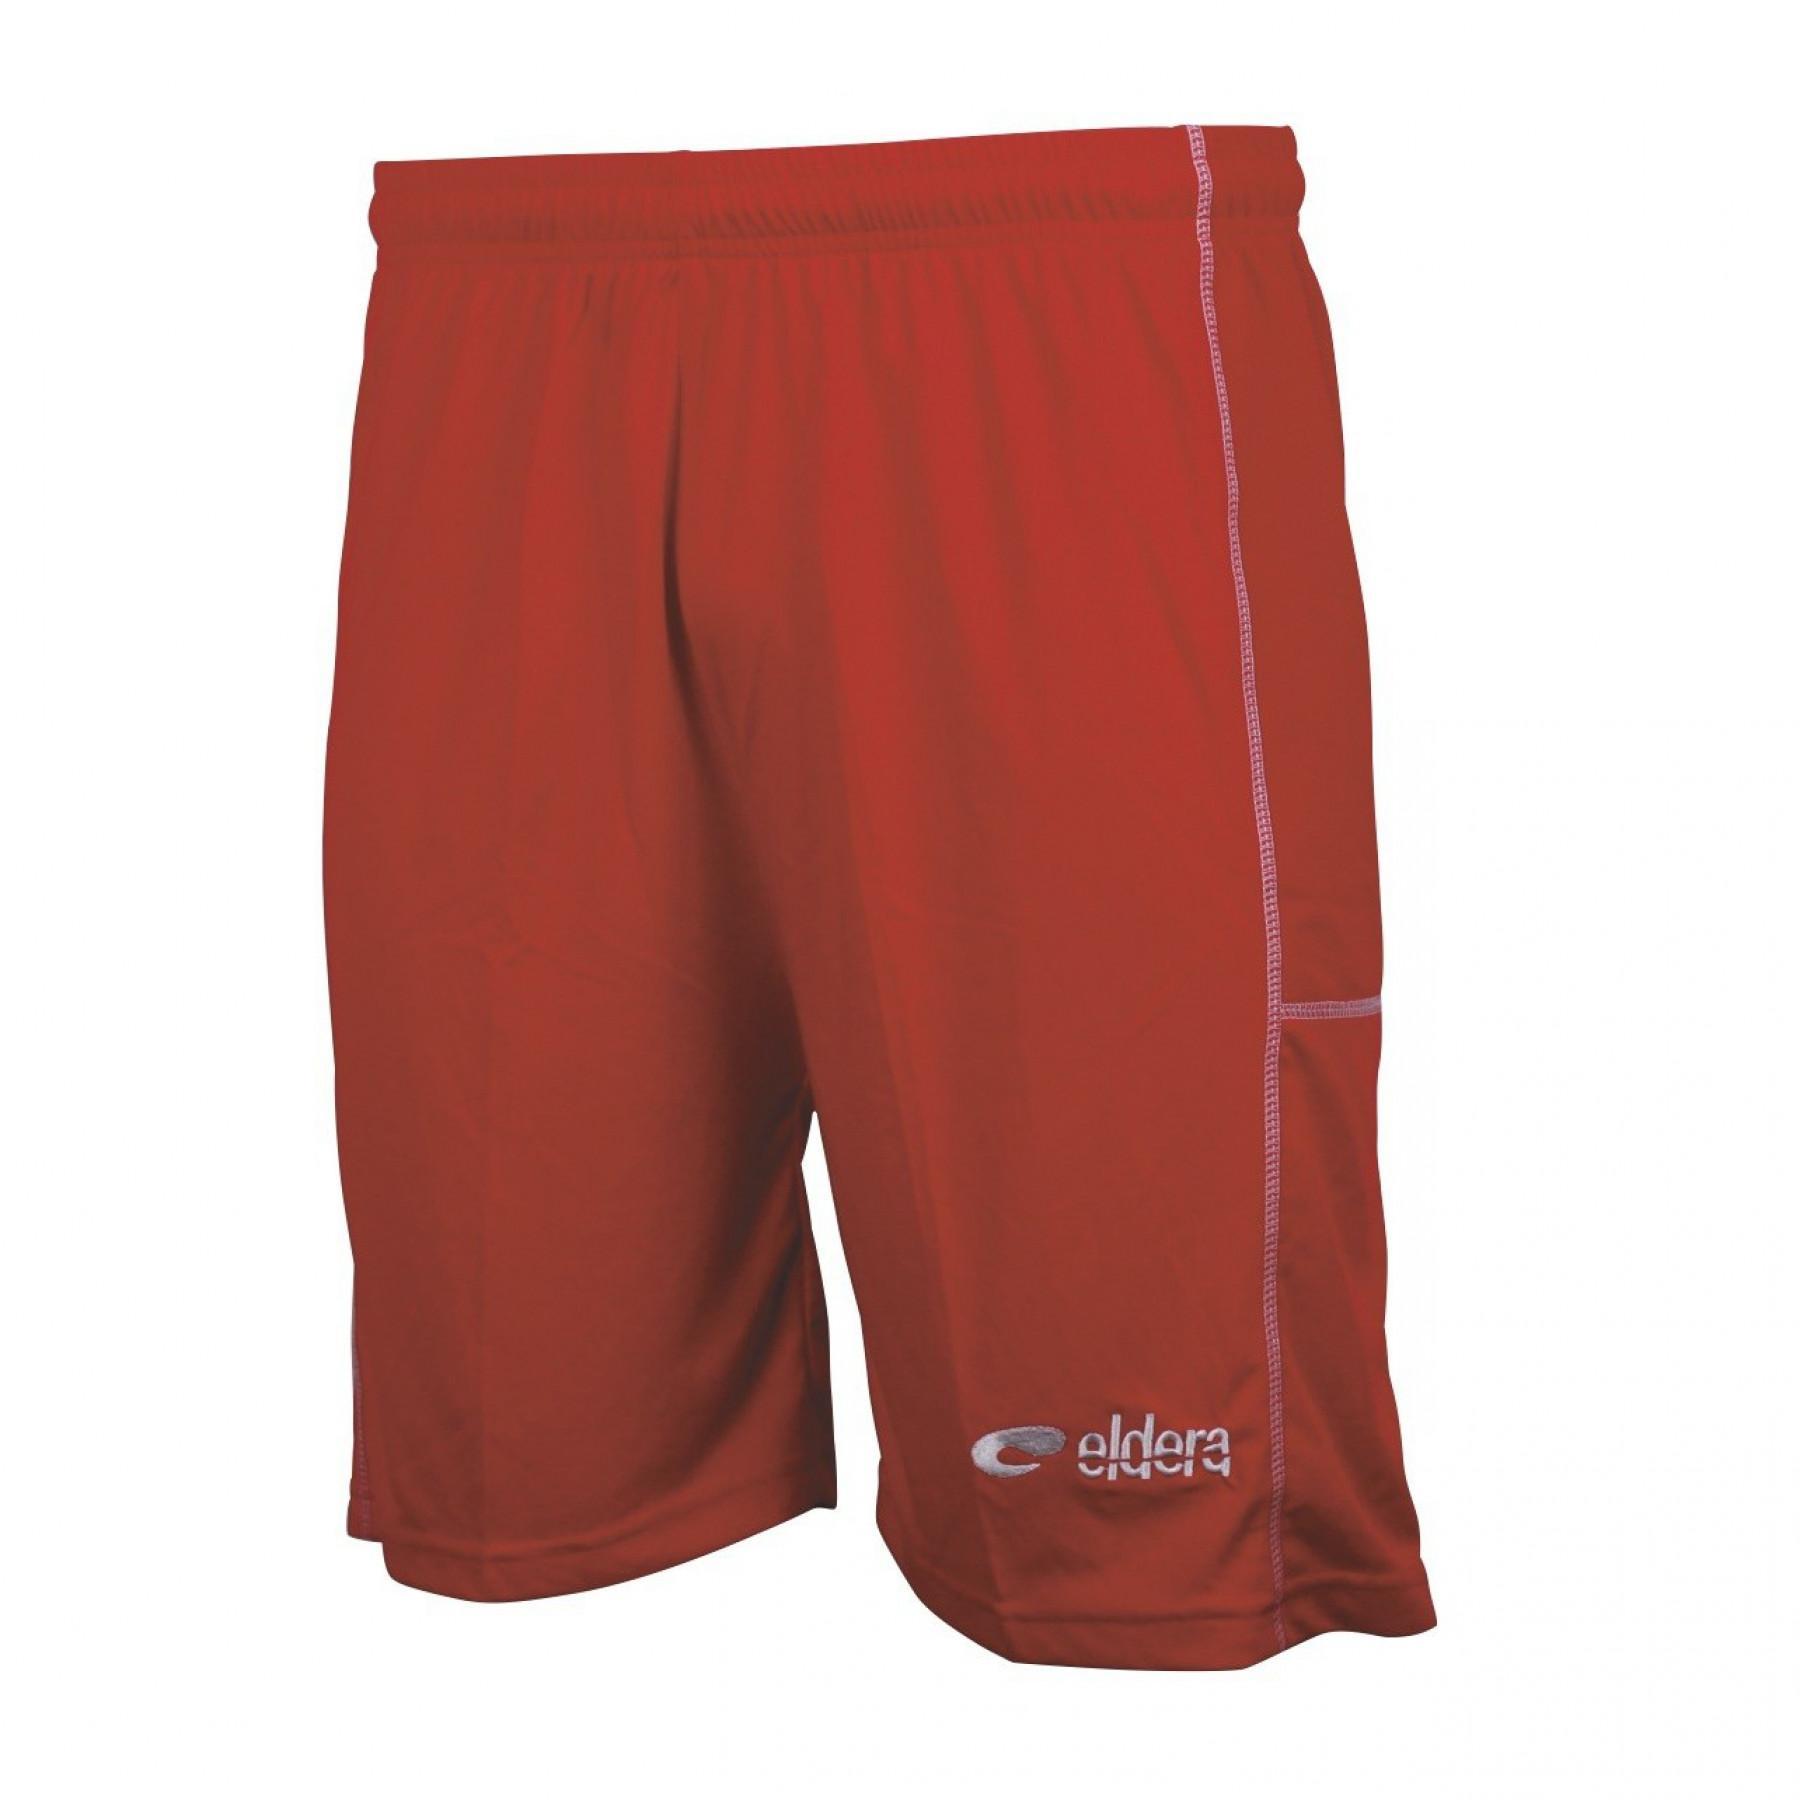 Pantalón corto Eldera Cup Basket